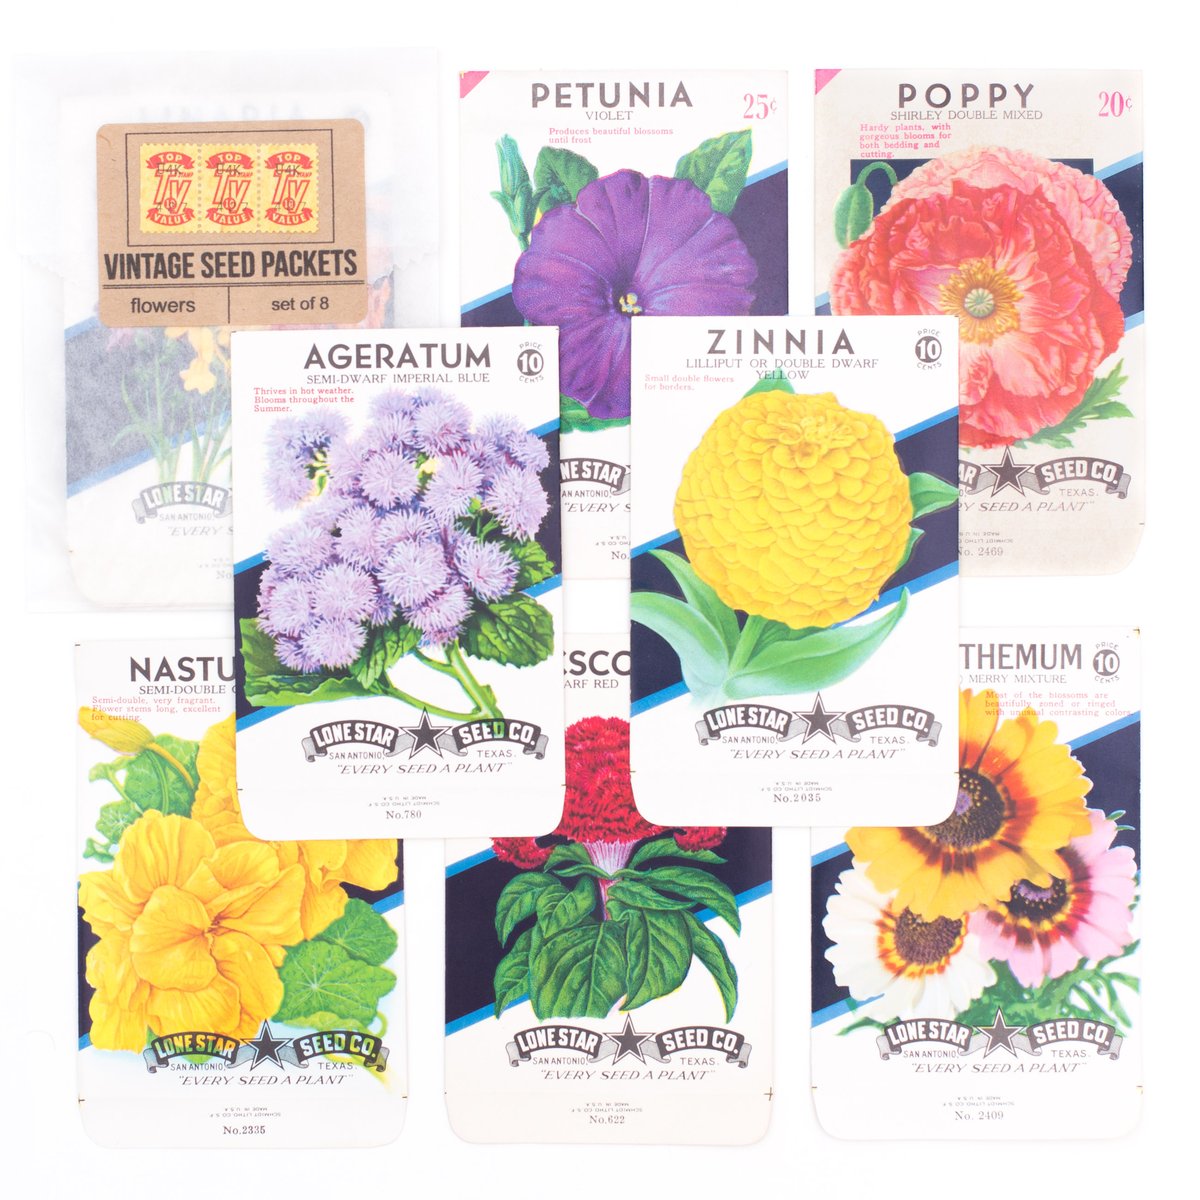 SaturdayAMVintage — Vintage Flower Seed Packets, No. 3 - Set of 8